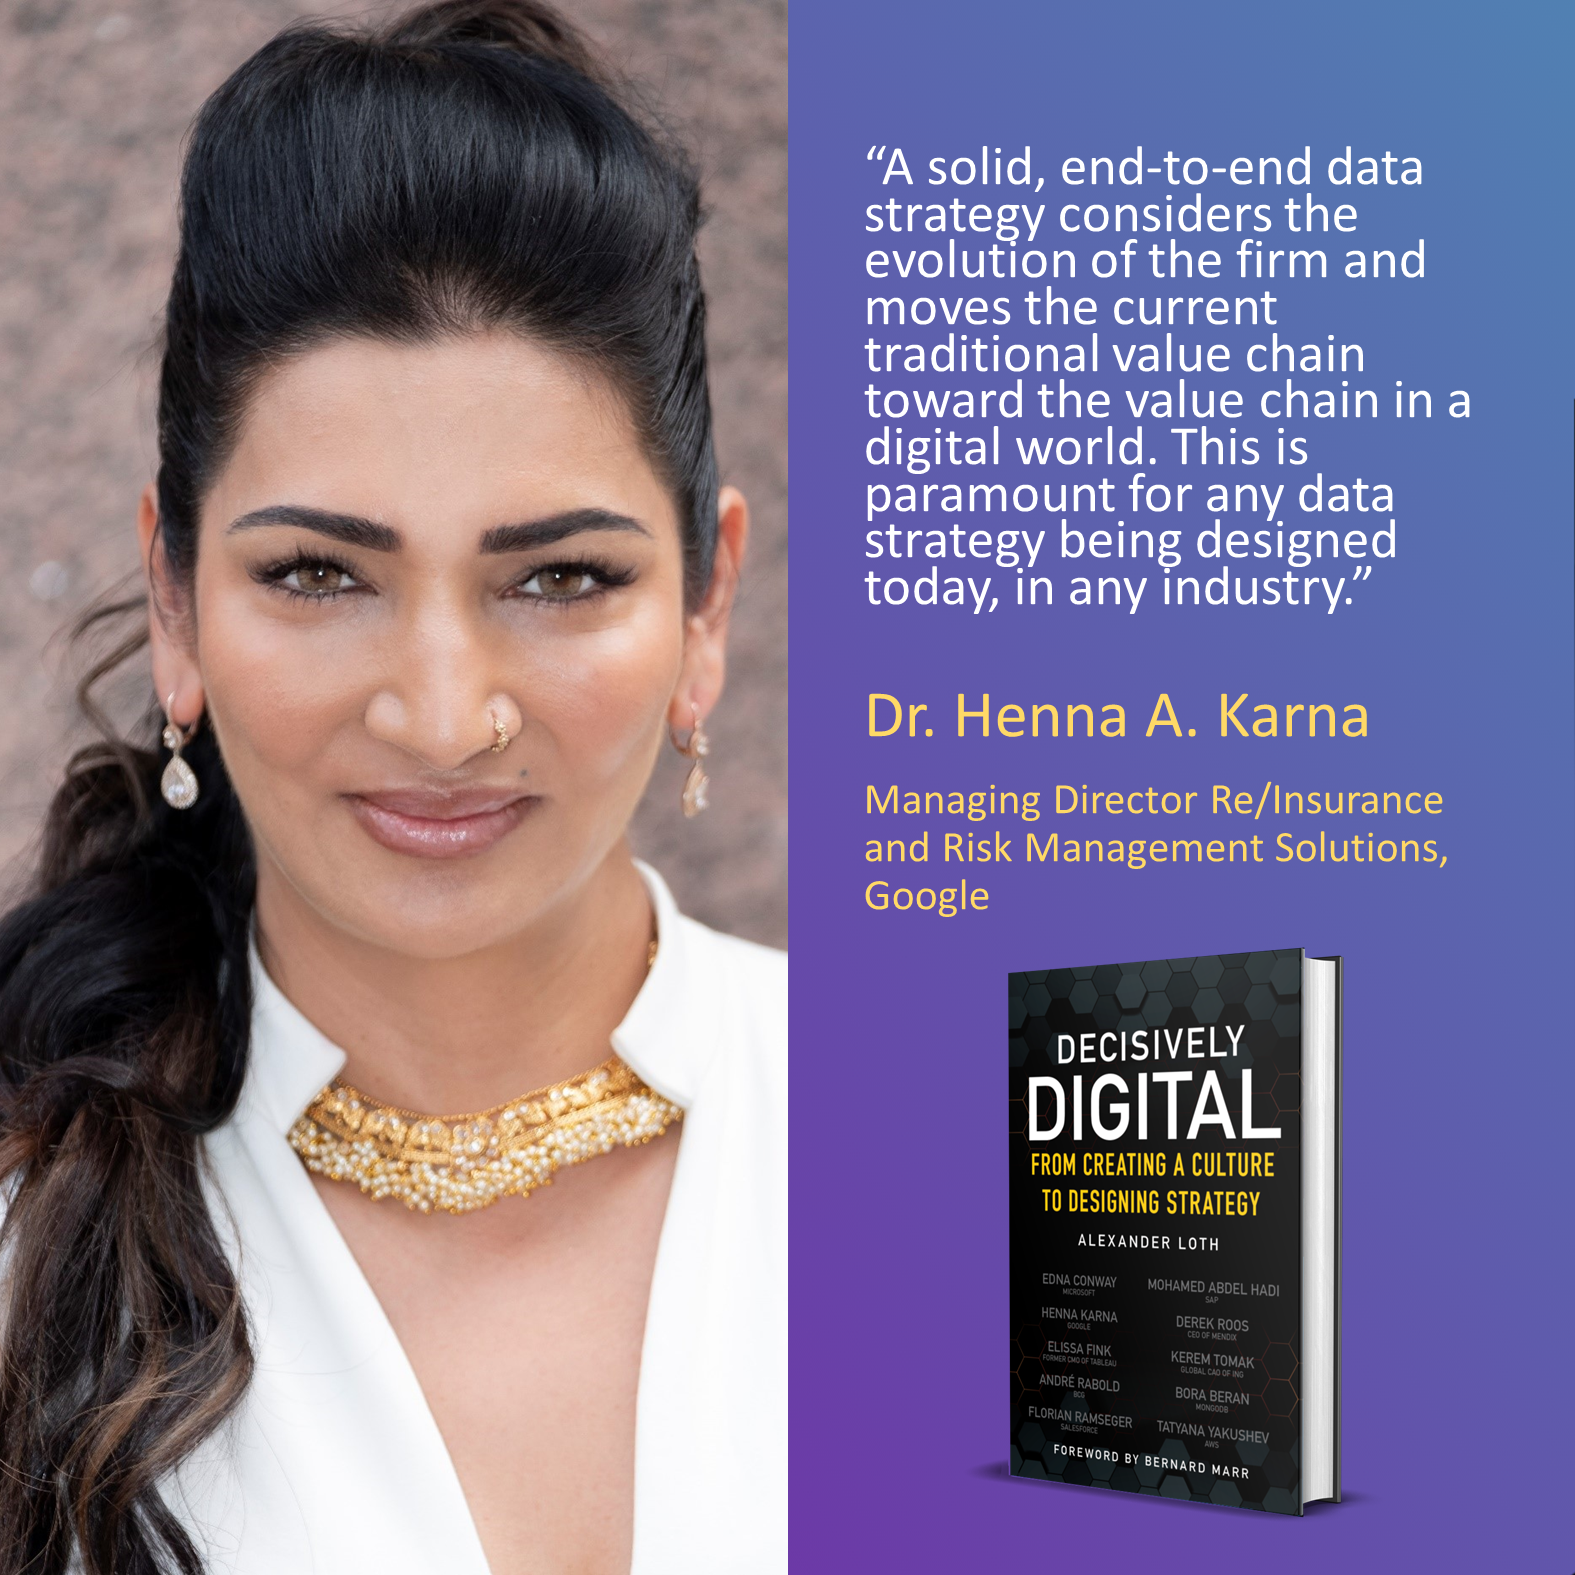 Dr. Henna A. Karna, Google